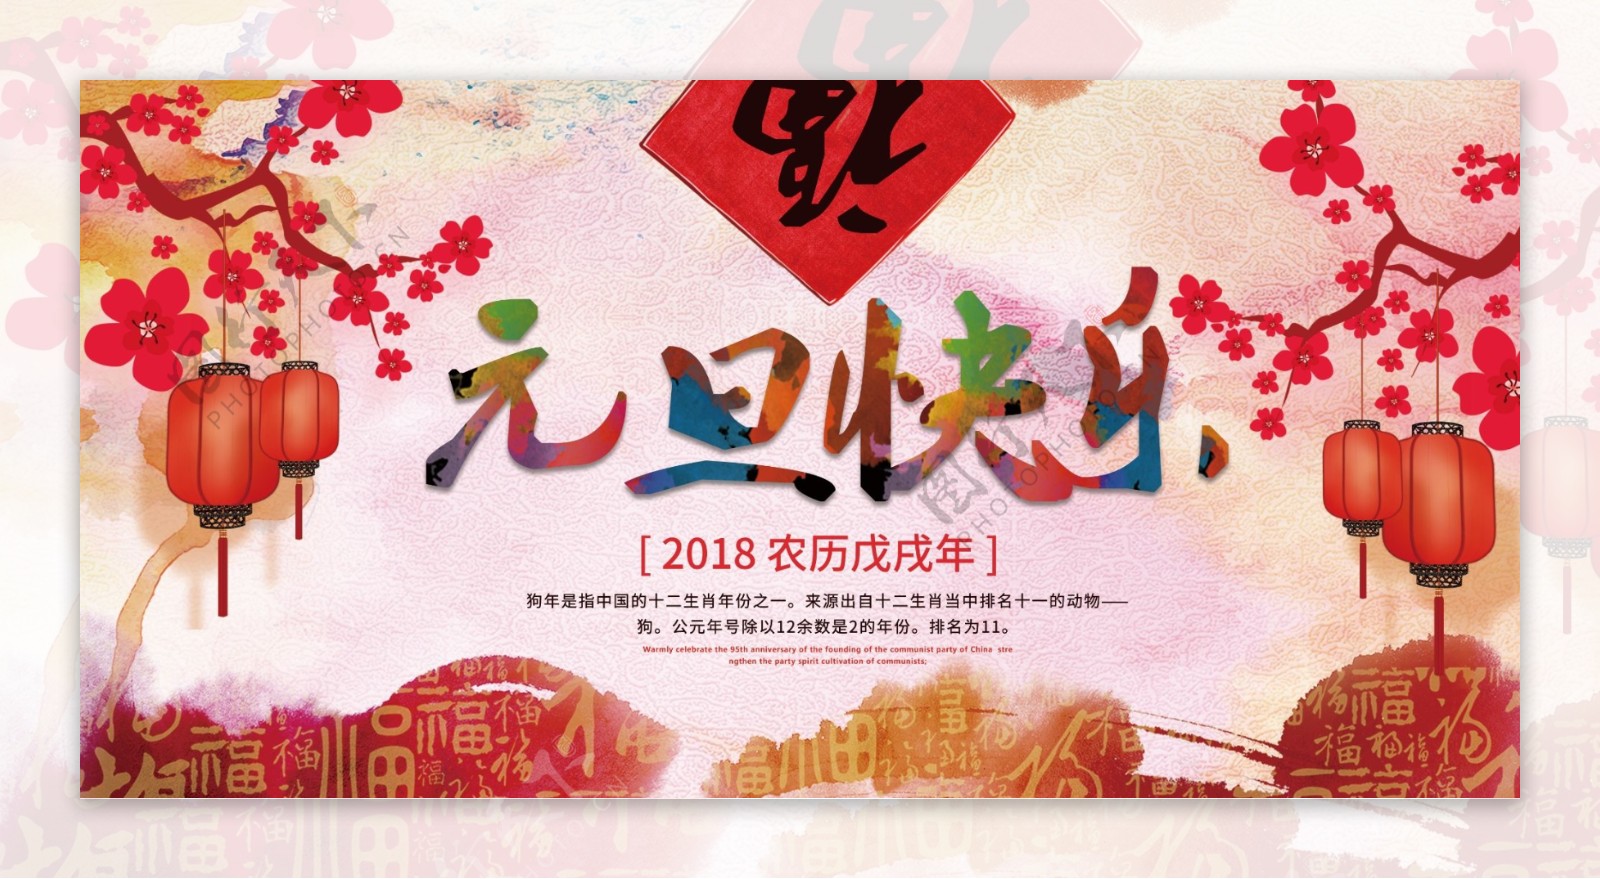 中国风喜庆节日元旦快乐展板设计